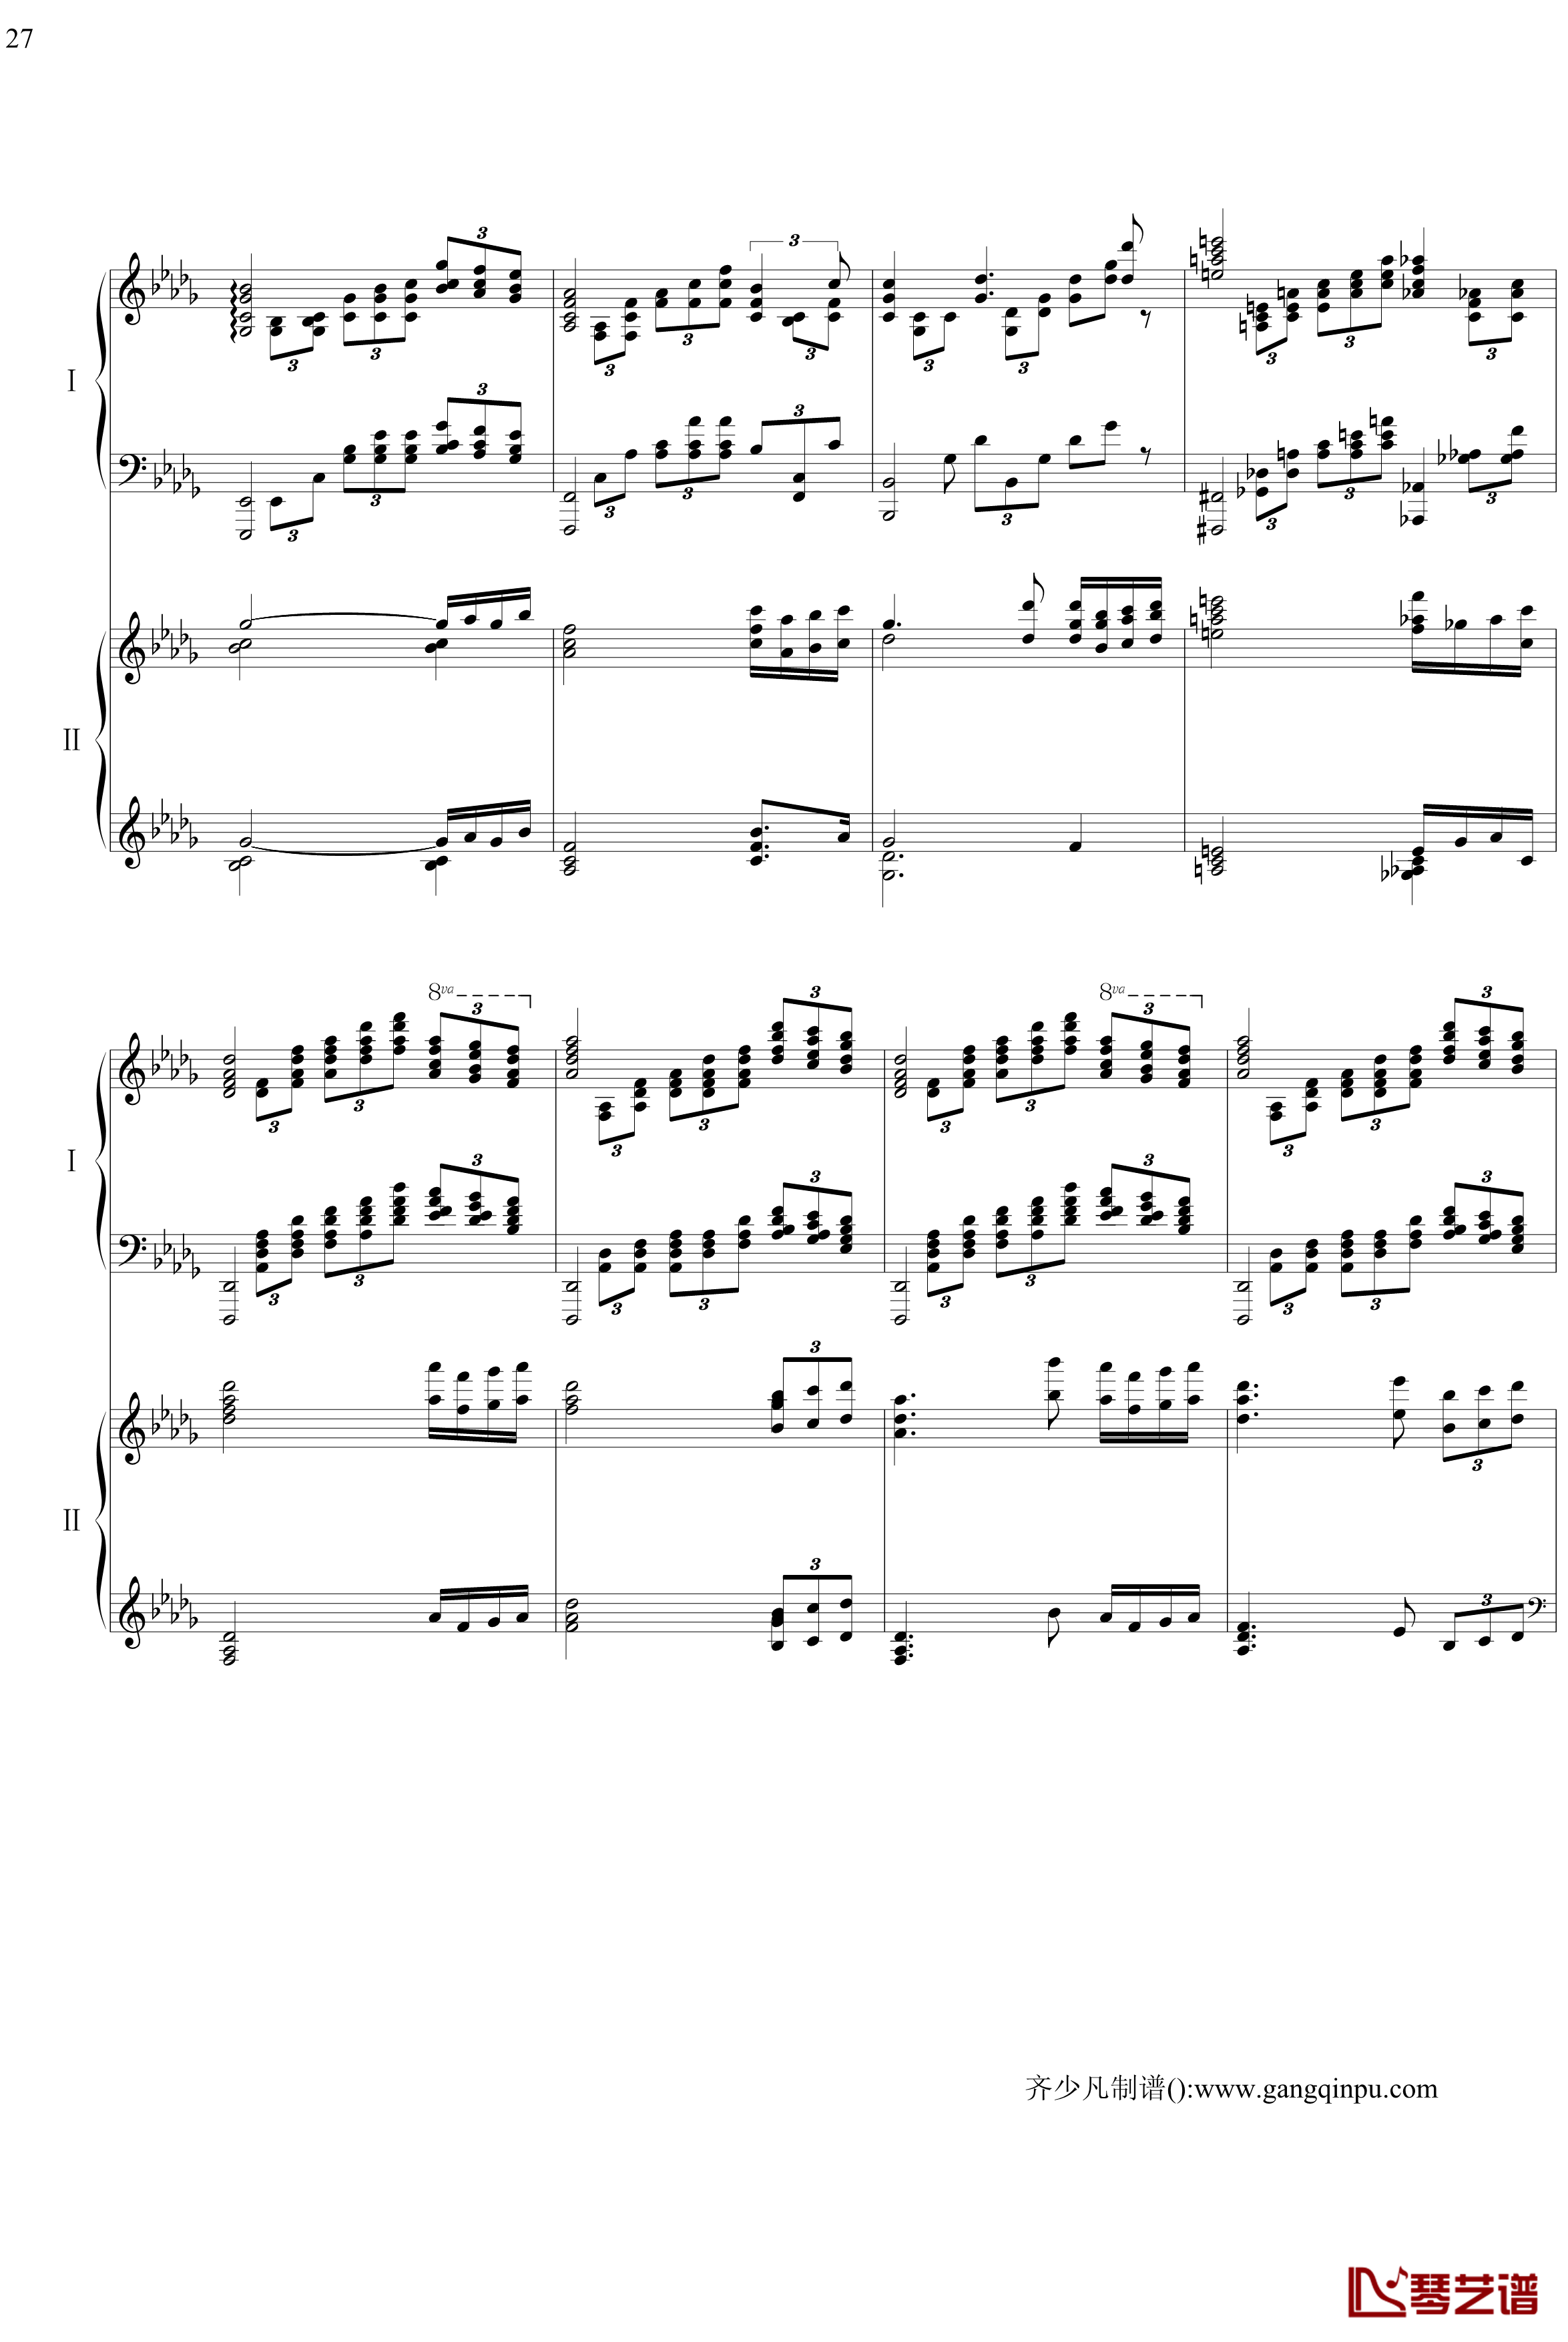 帕格尼尼主题狂想曲钢琴谱-11~18变奏-拉赫马尼若夫27